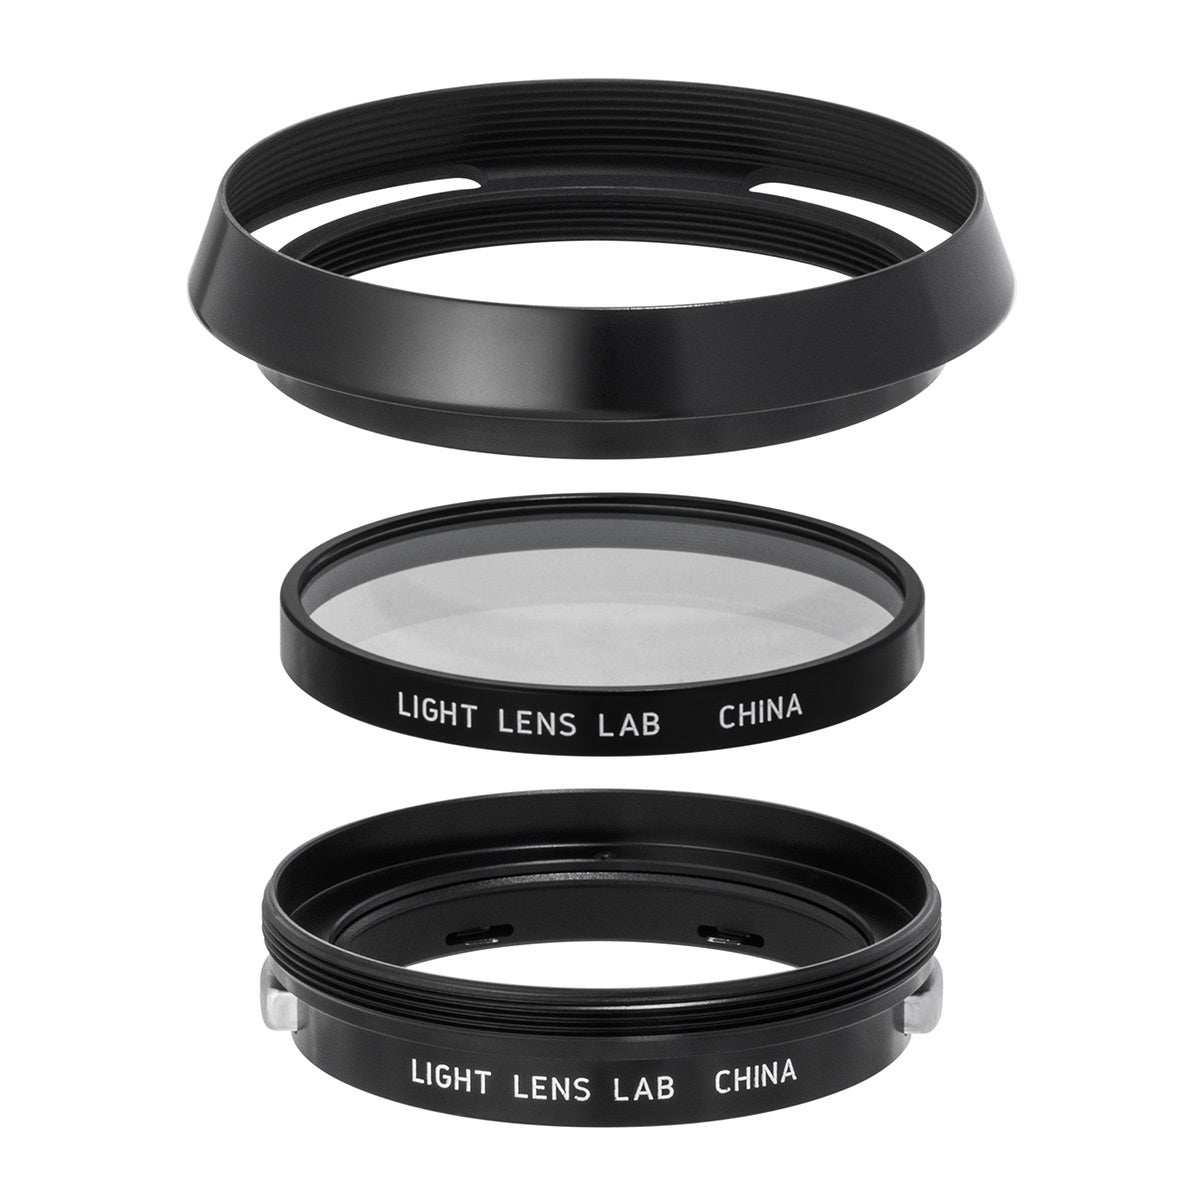 LIGHT LENS LAB レンズフード 「L-12504」「L-E39-R」「L-E39-A」 3種 発売